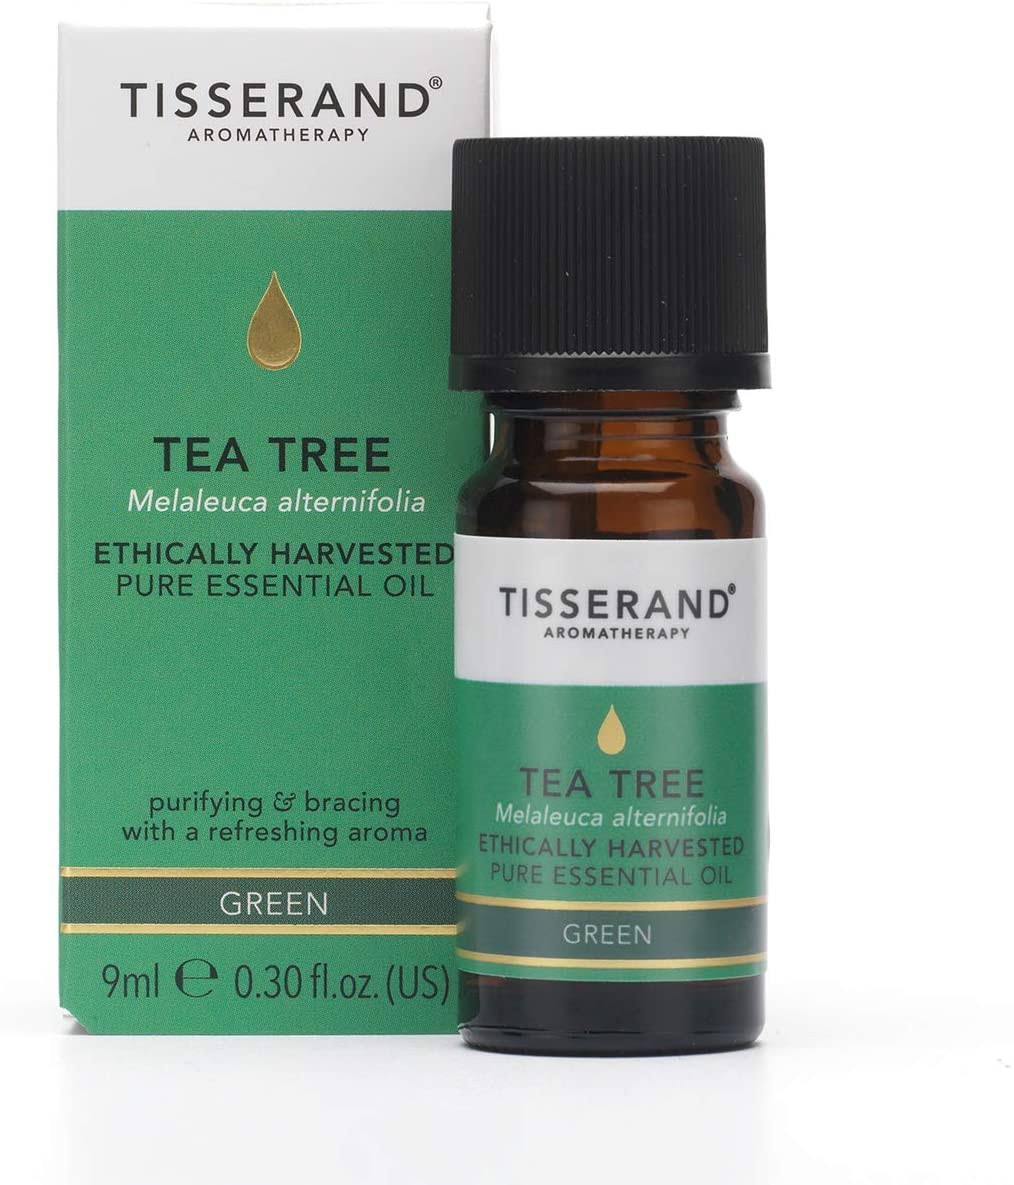 Tisserand Aromatherapy - Tea Tree Essential Oil, 9ml